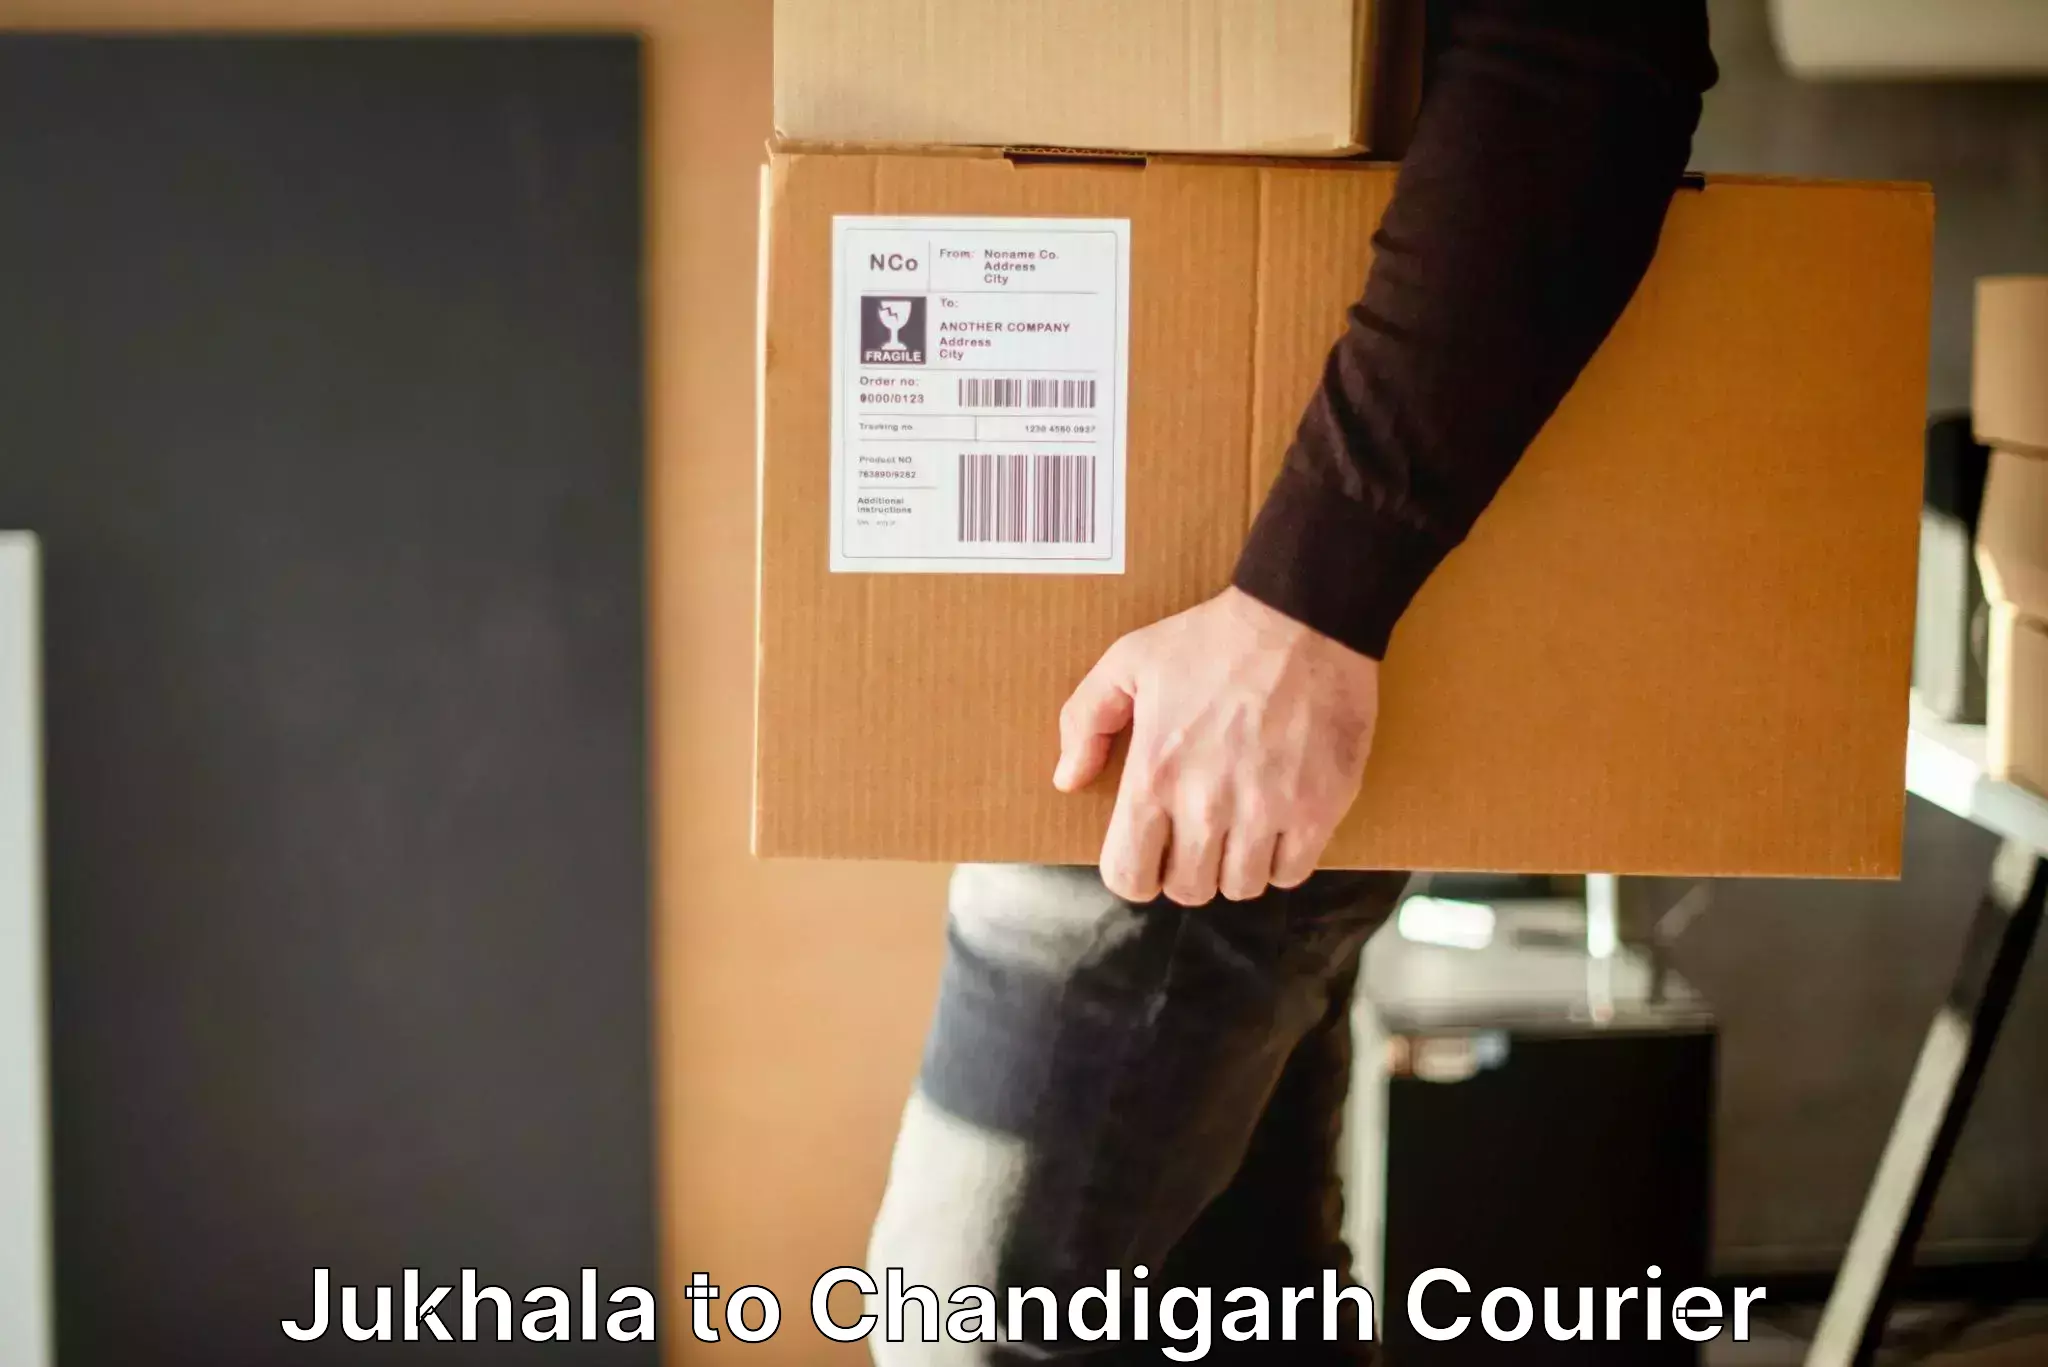 Luggage shipping guide Jukhala to Chandigarh